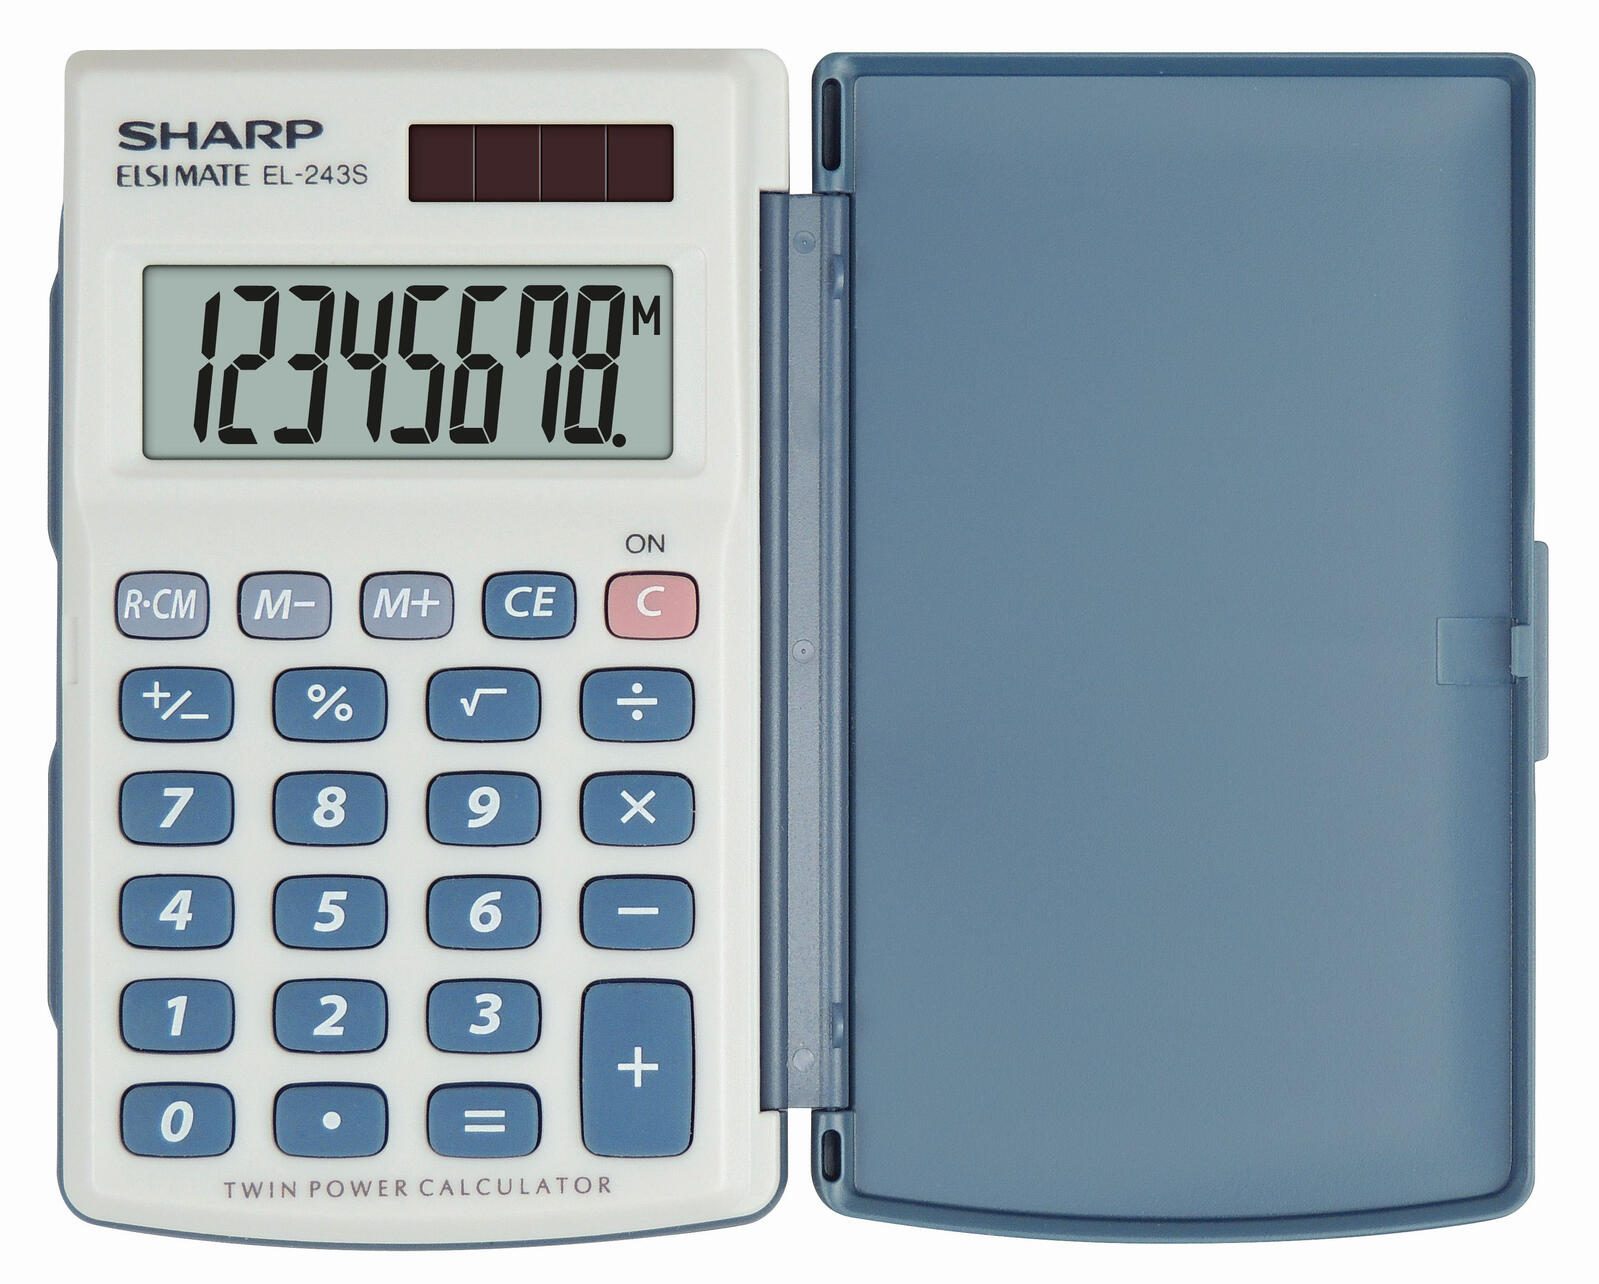 SHARP Taschenrechner EL-243S